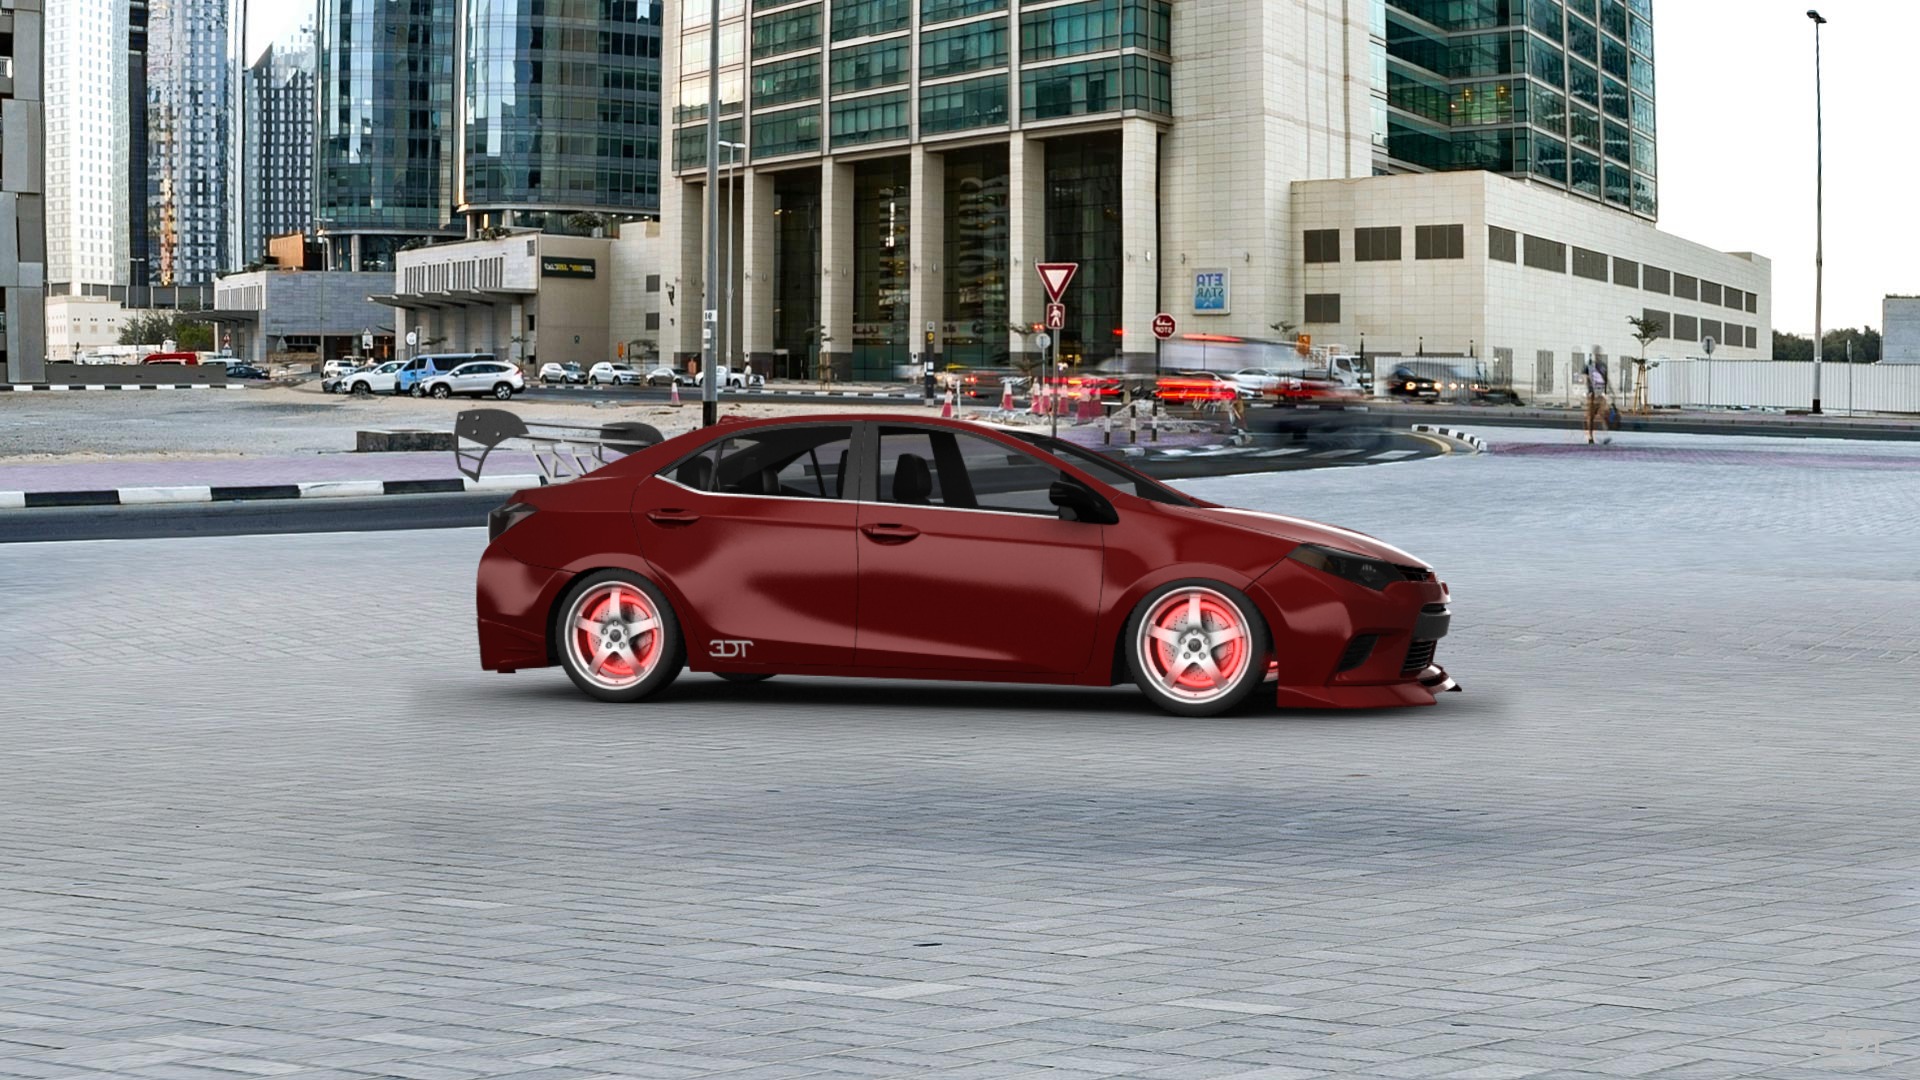 Toyota Corolla Sedan 2013 tuning